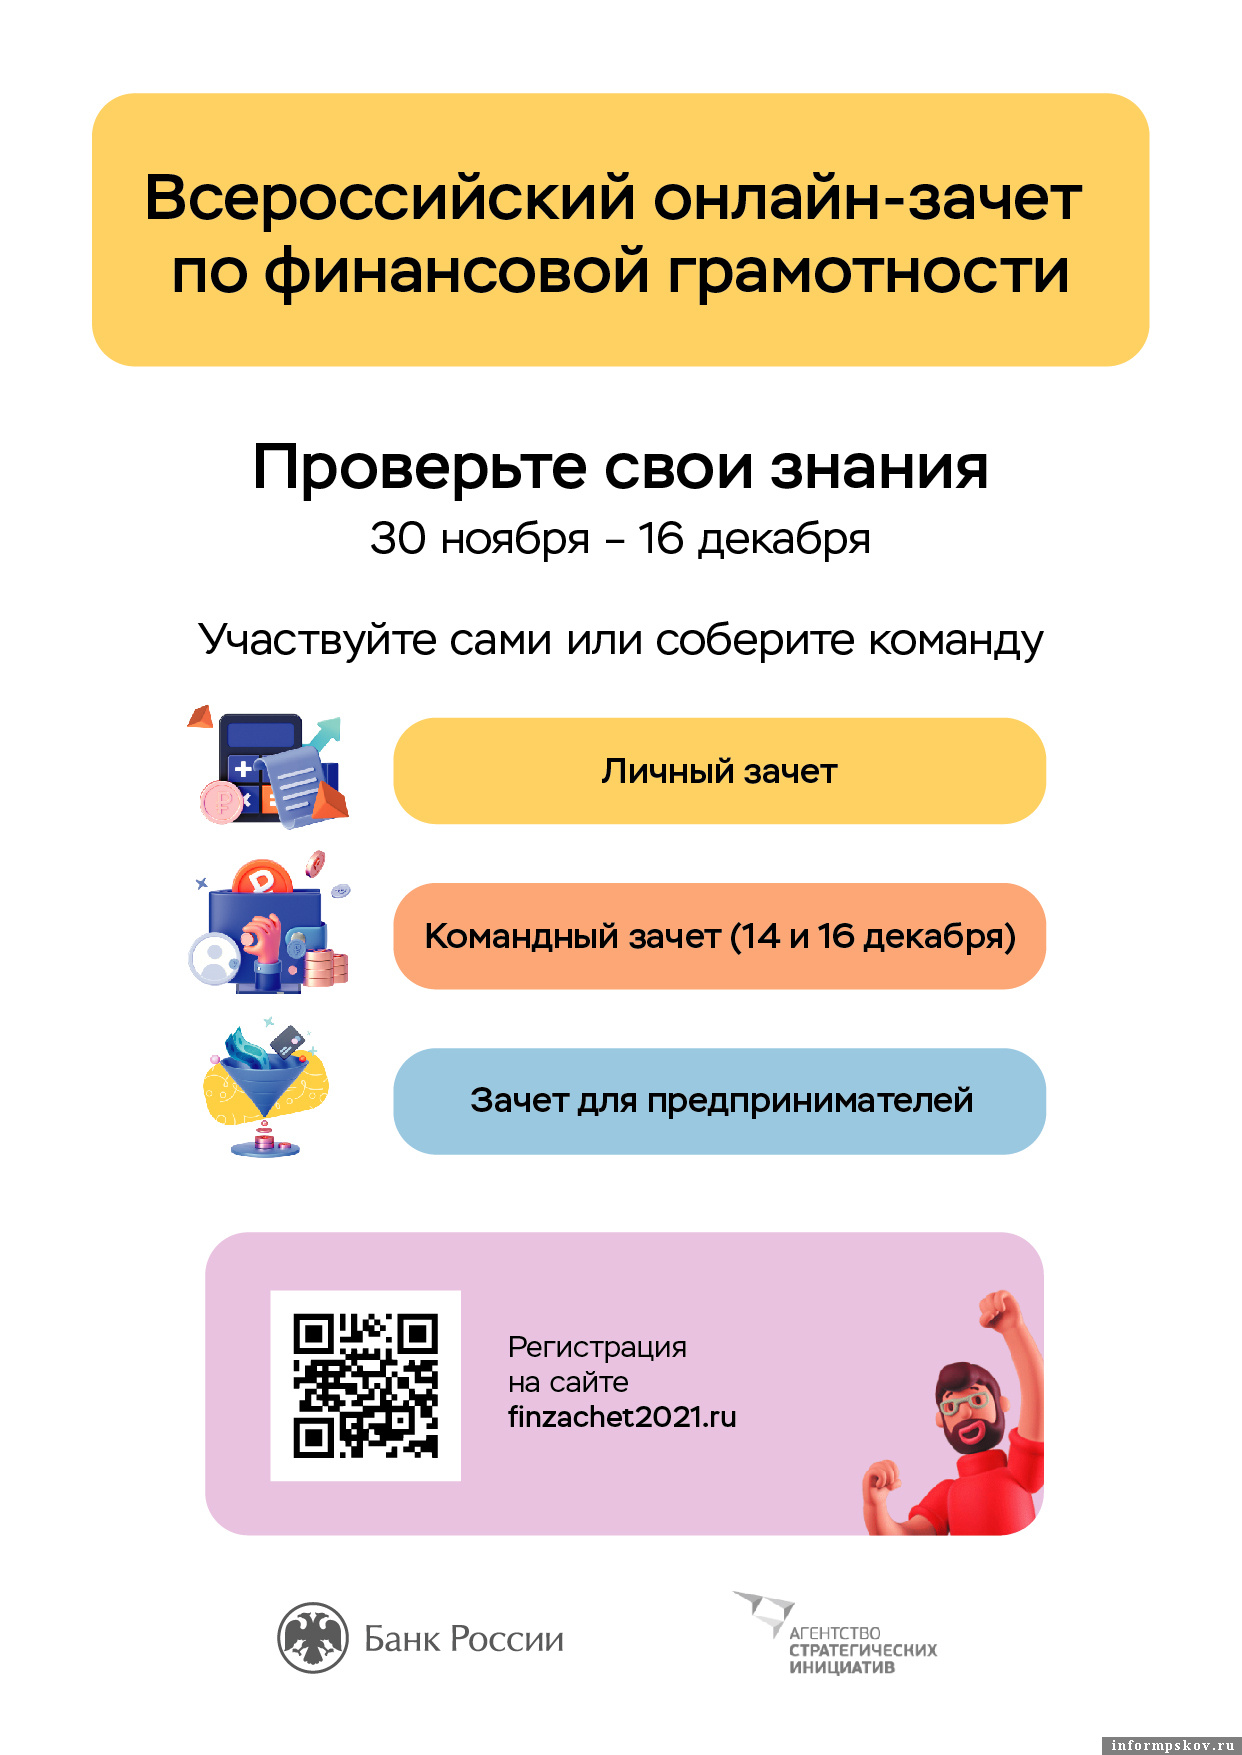 Приглашаем принять участие во Всероссийском онлайн-зачёте по финансовой грамотности